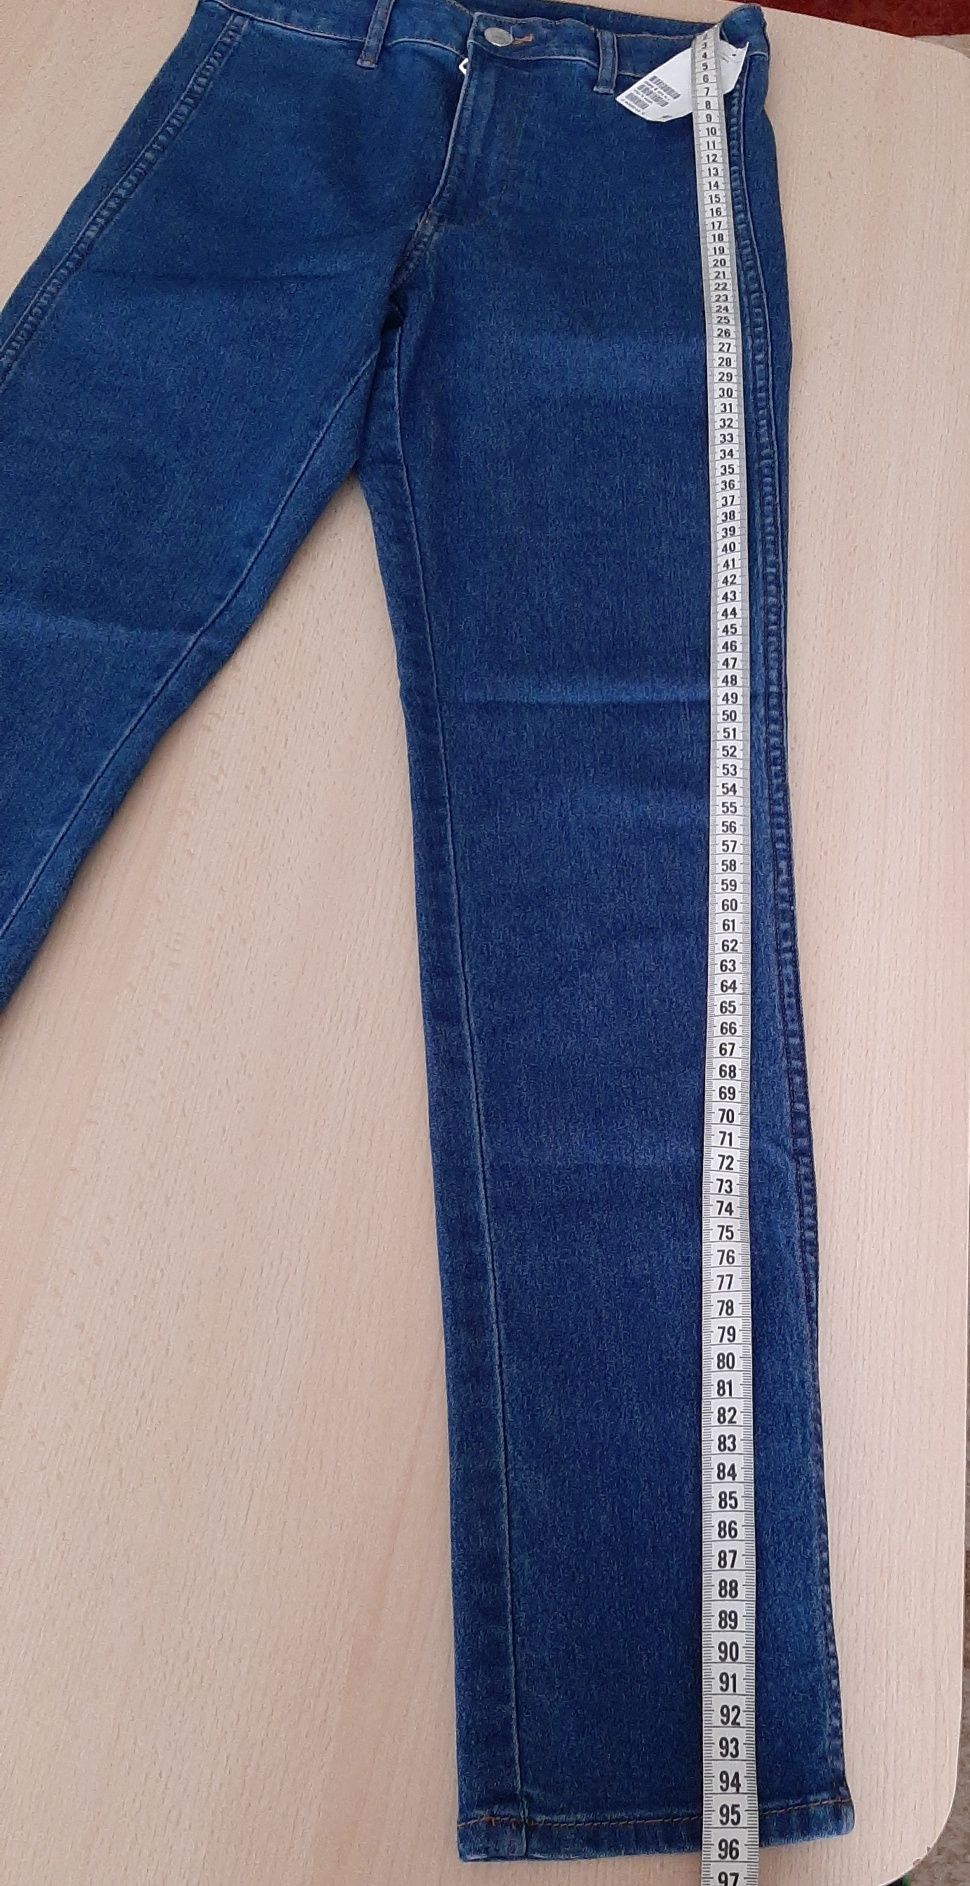 H&M Nowe jeansy spodnie jeansowe dżinsy skinny ankle r.27 S 36